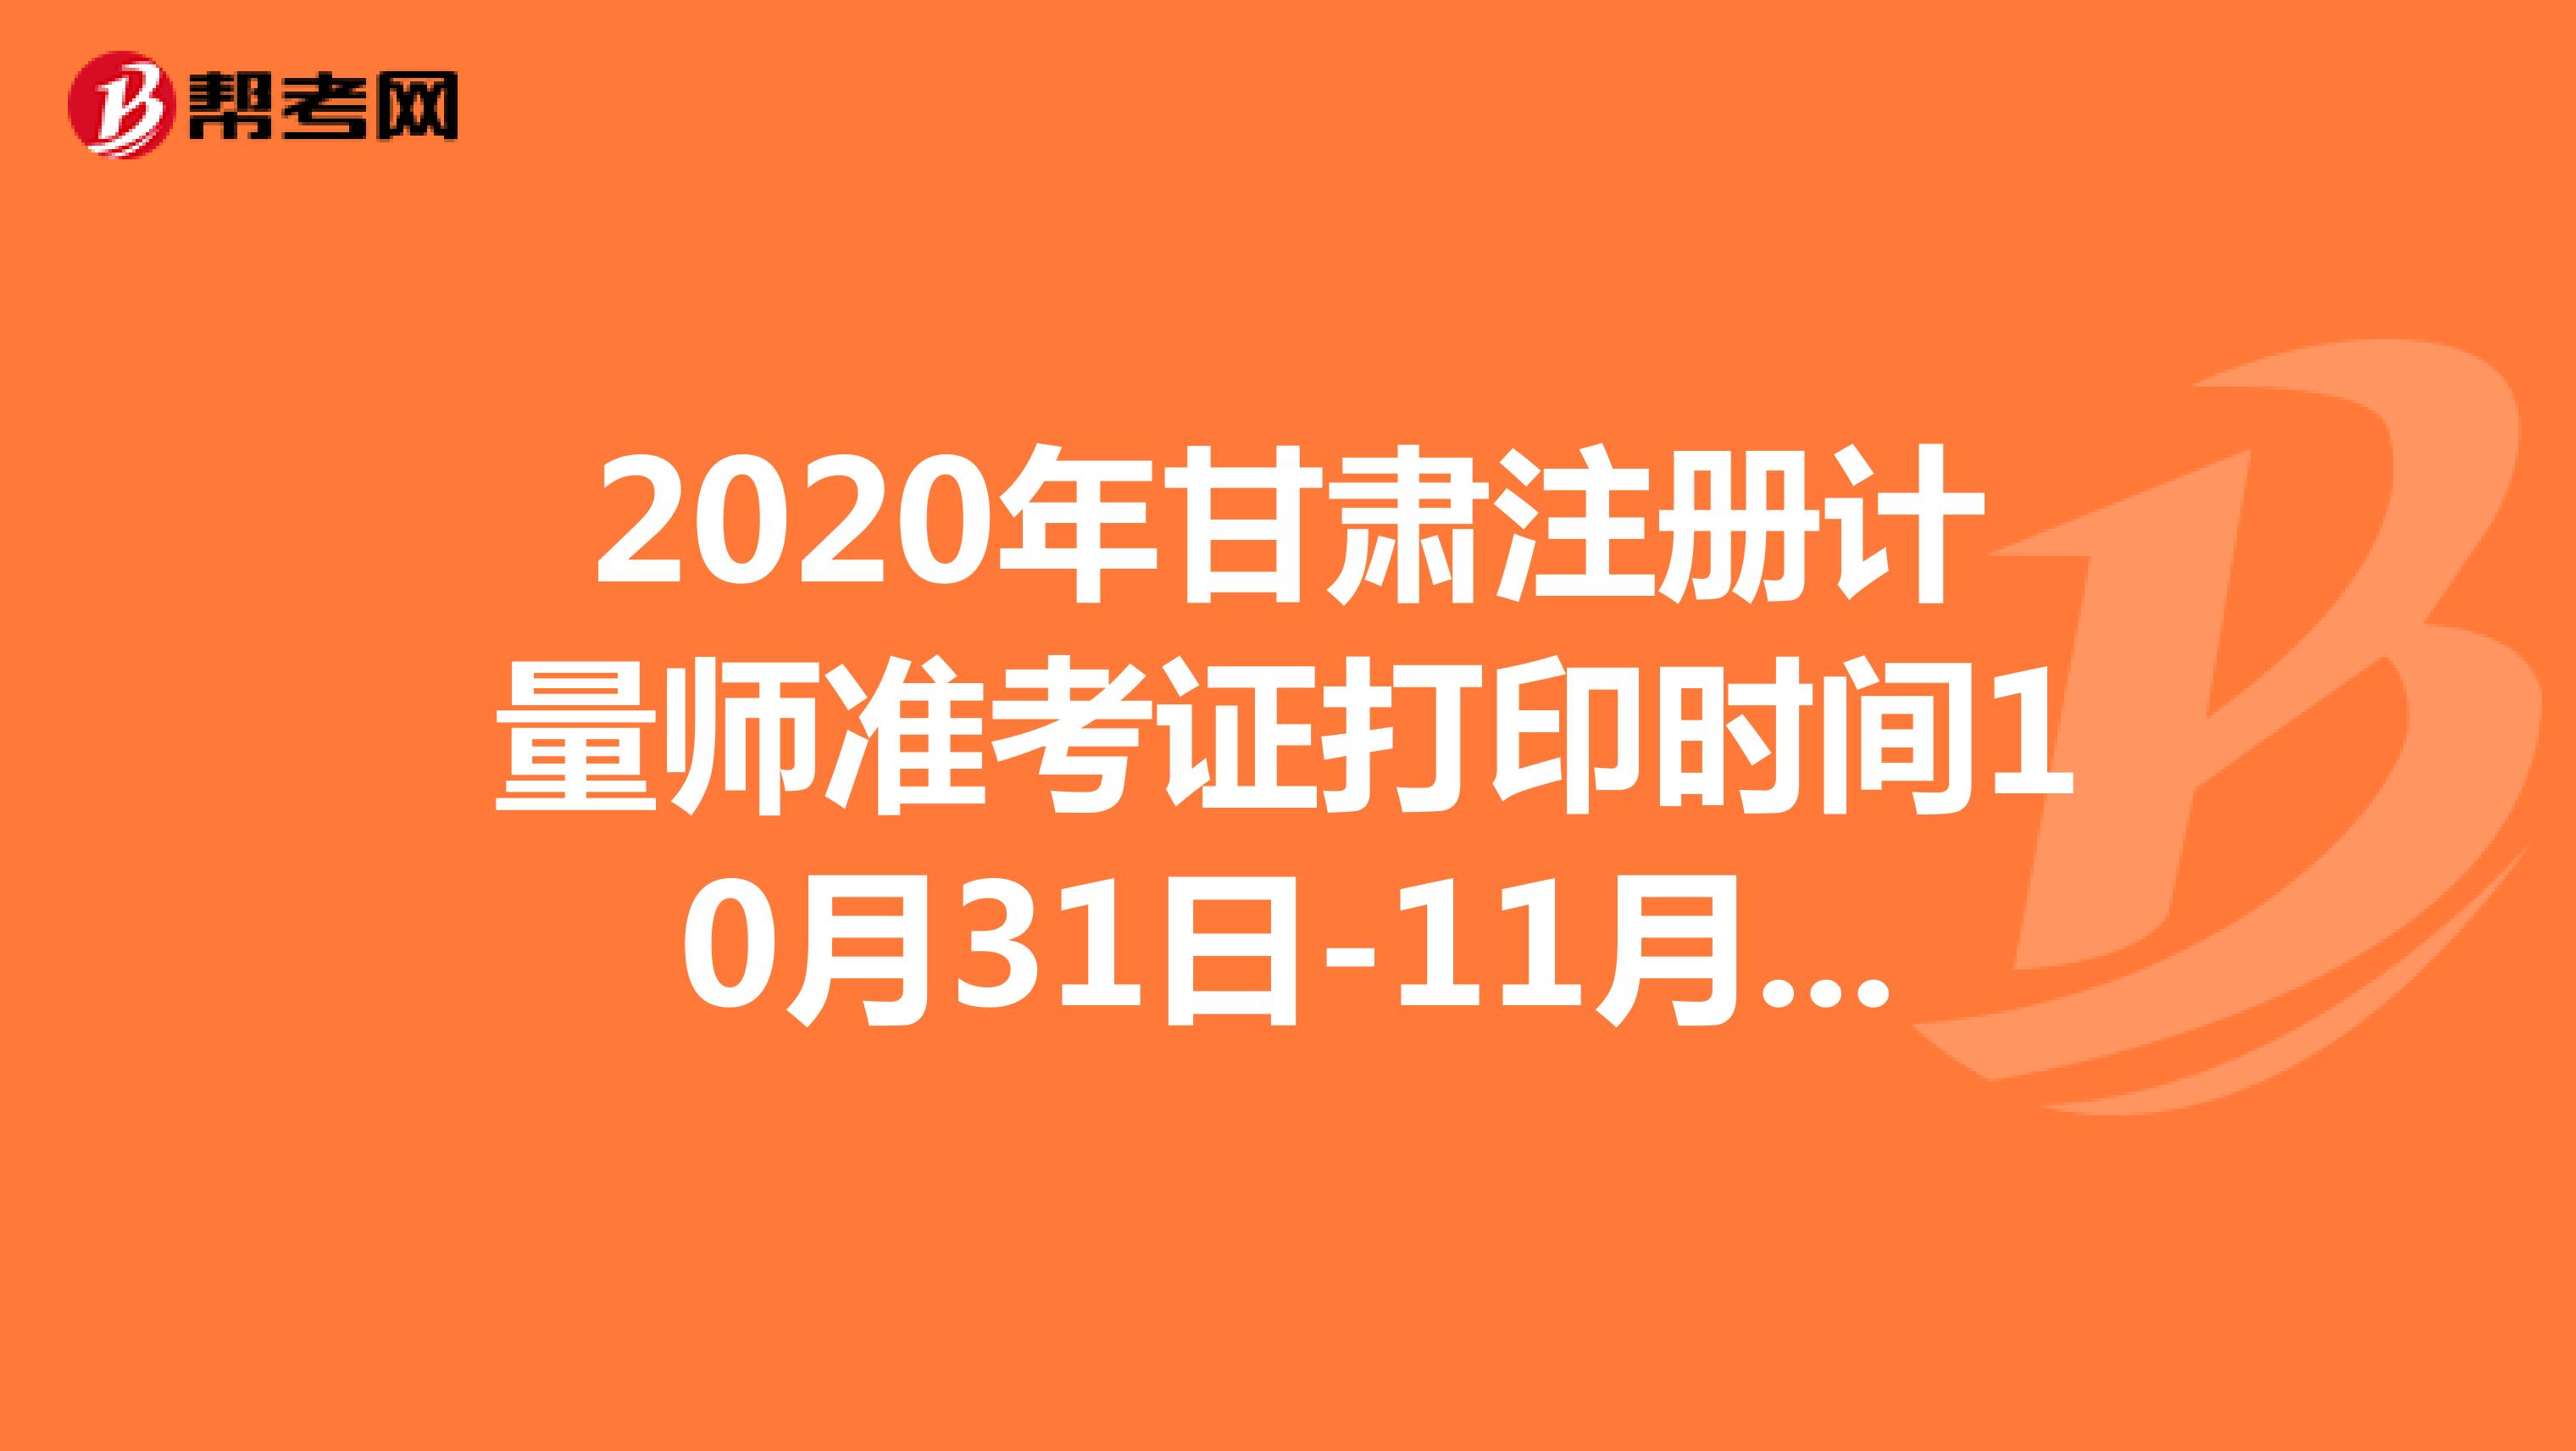 2020年甘肃注册计量师准考证打印时间10月31日-11月8日